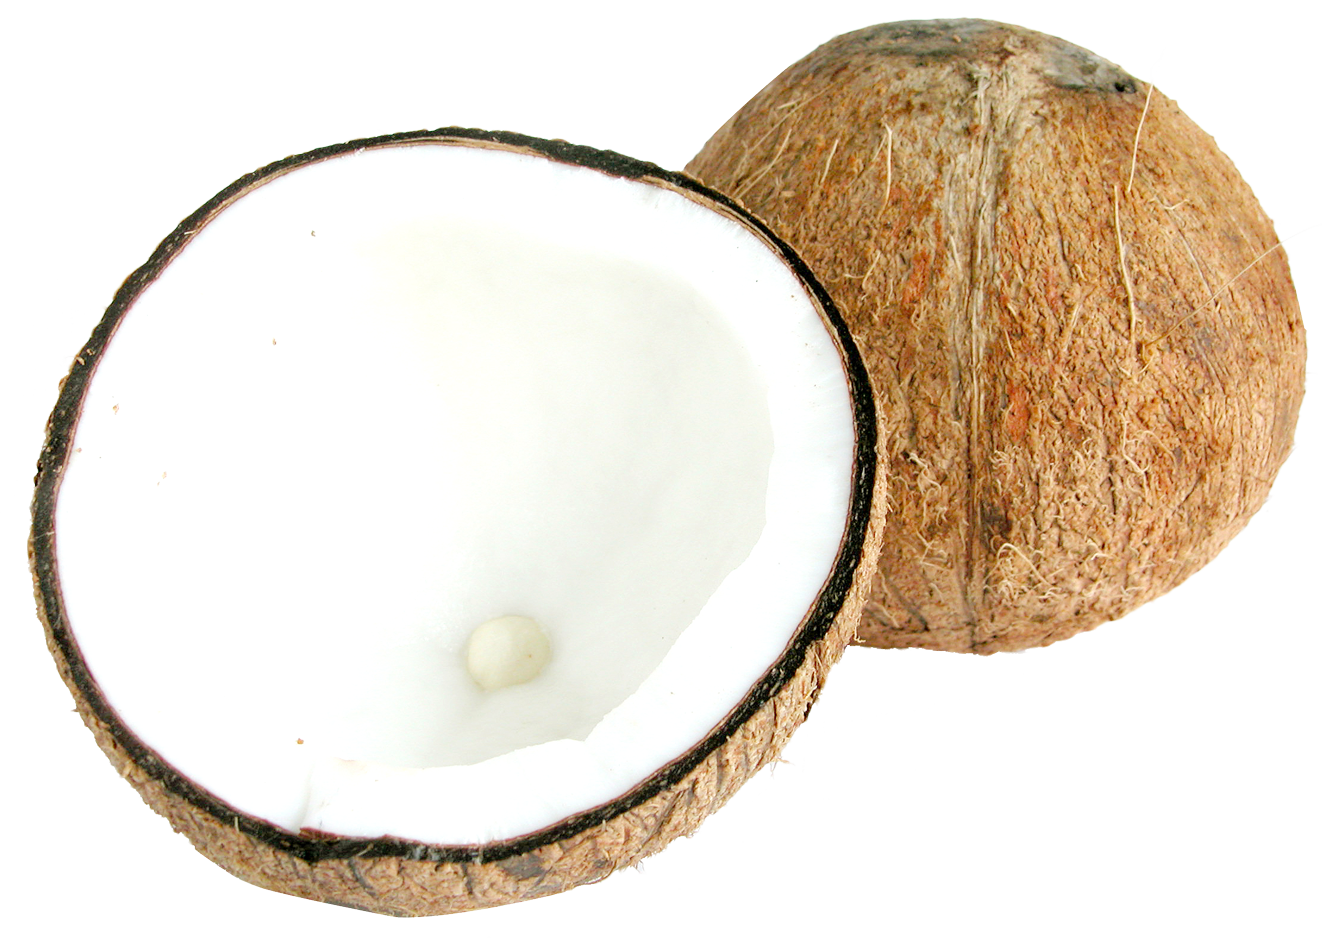 Two Half Coconuts